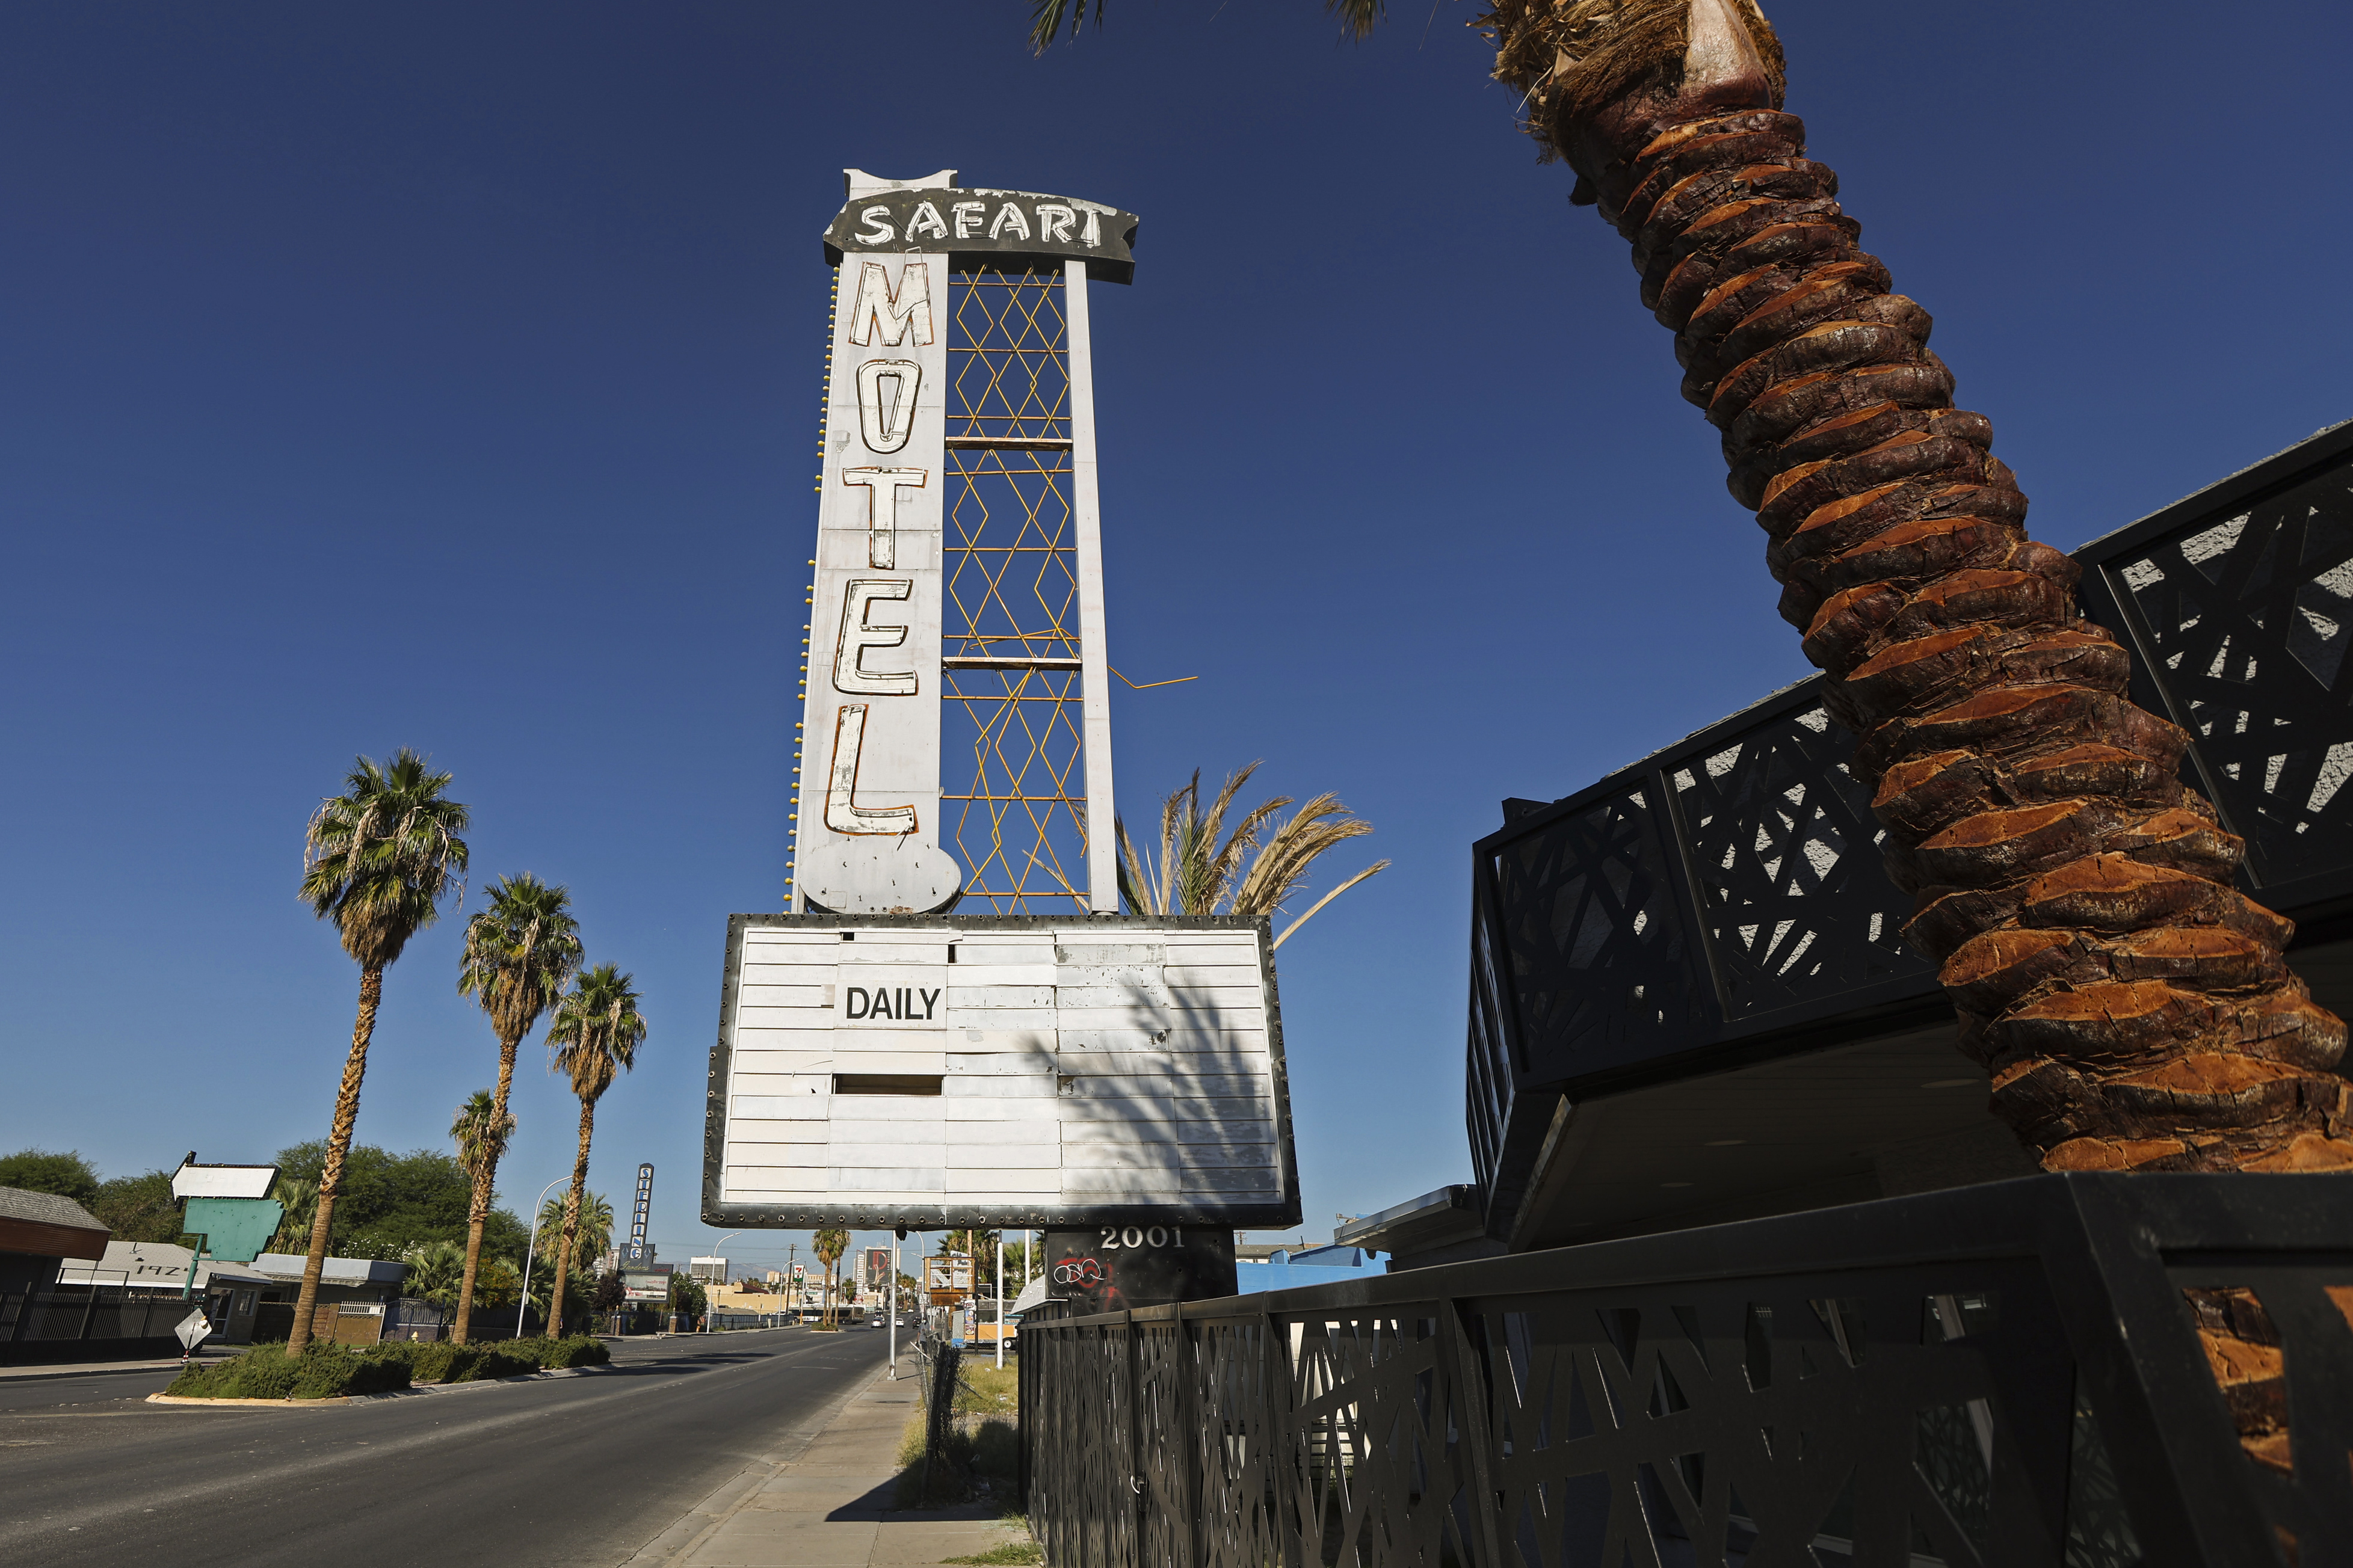 Downtown Las Vegas Safari Motel mendapatkan kehidupan baru sebagai perumahan transisi